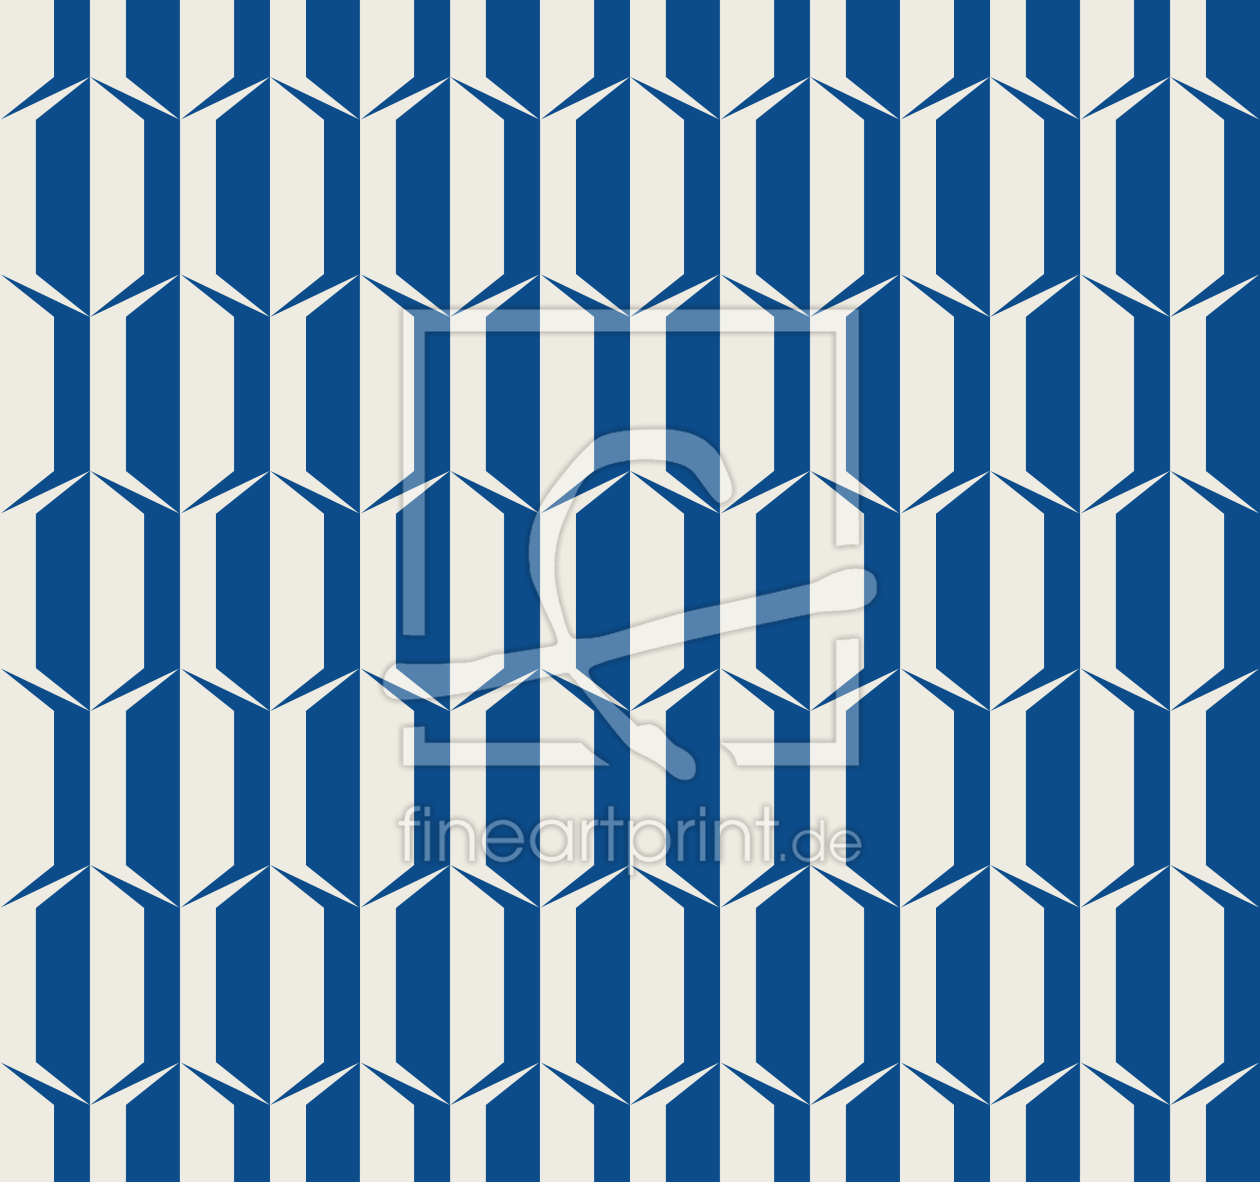 Bild-Nr.: 9013729 Sechziger-Dekoration erstellt von patterndesigns-com